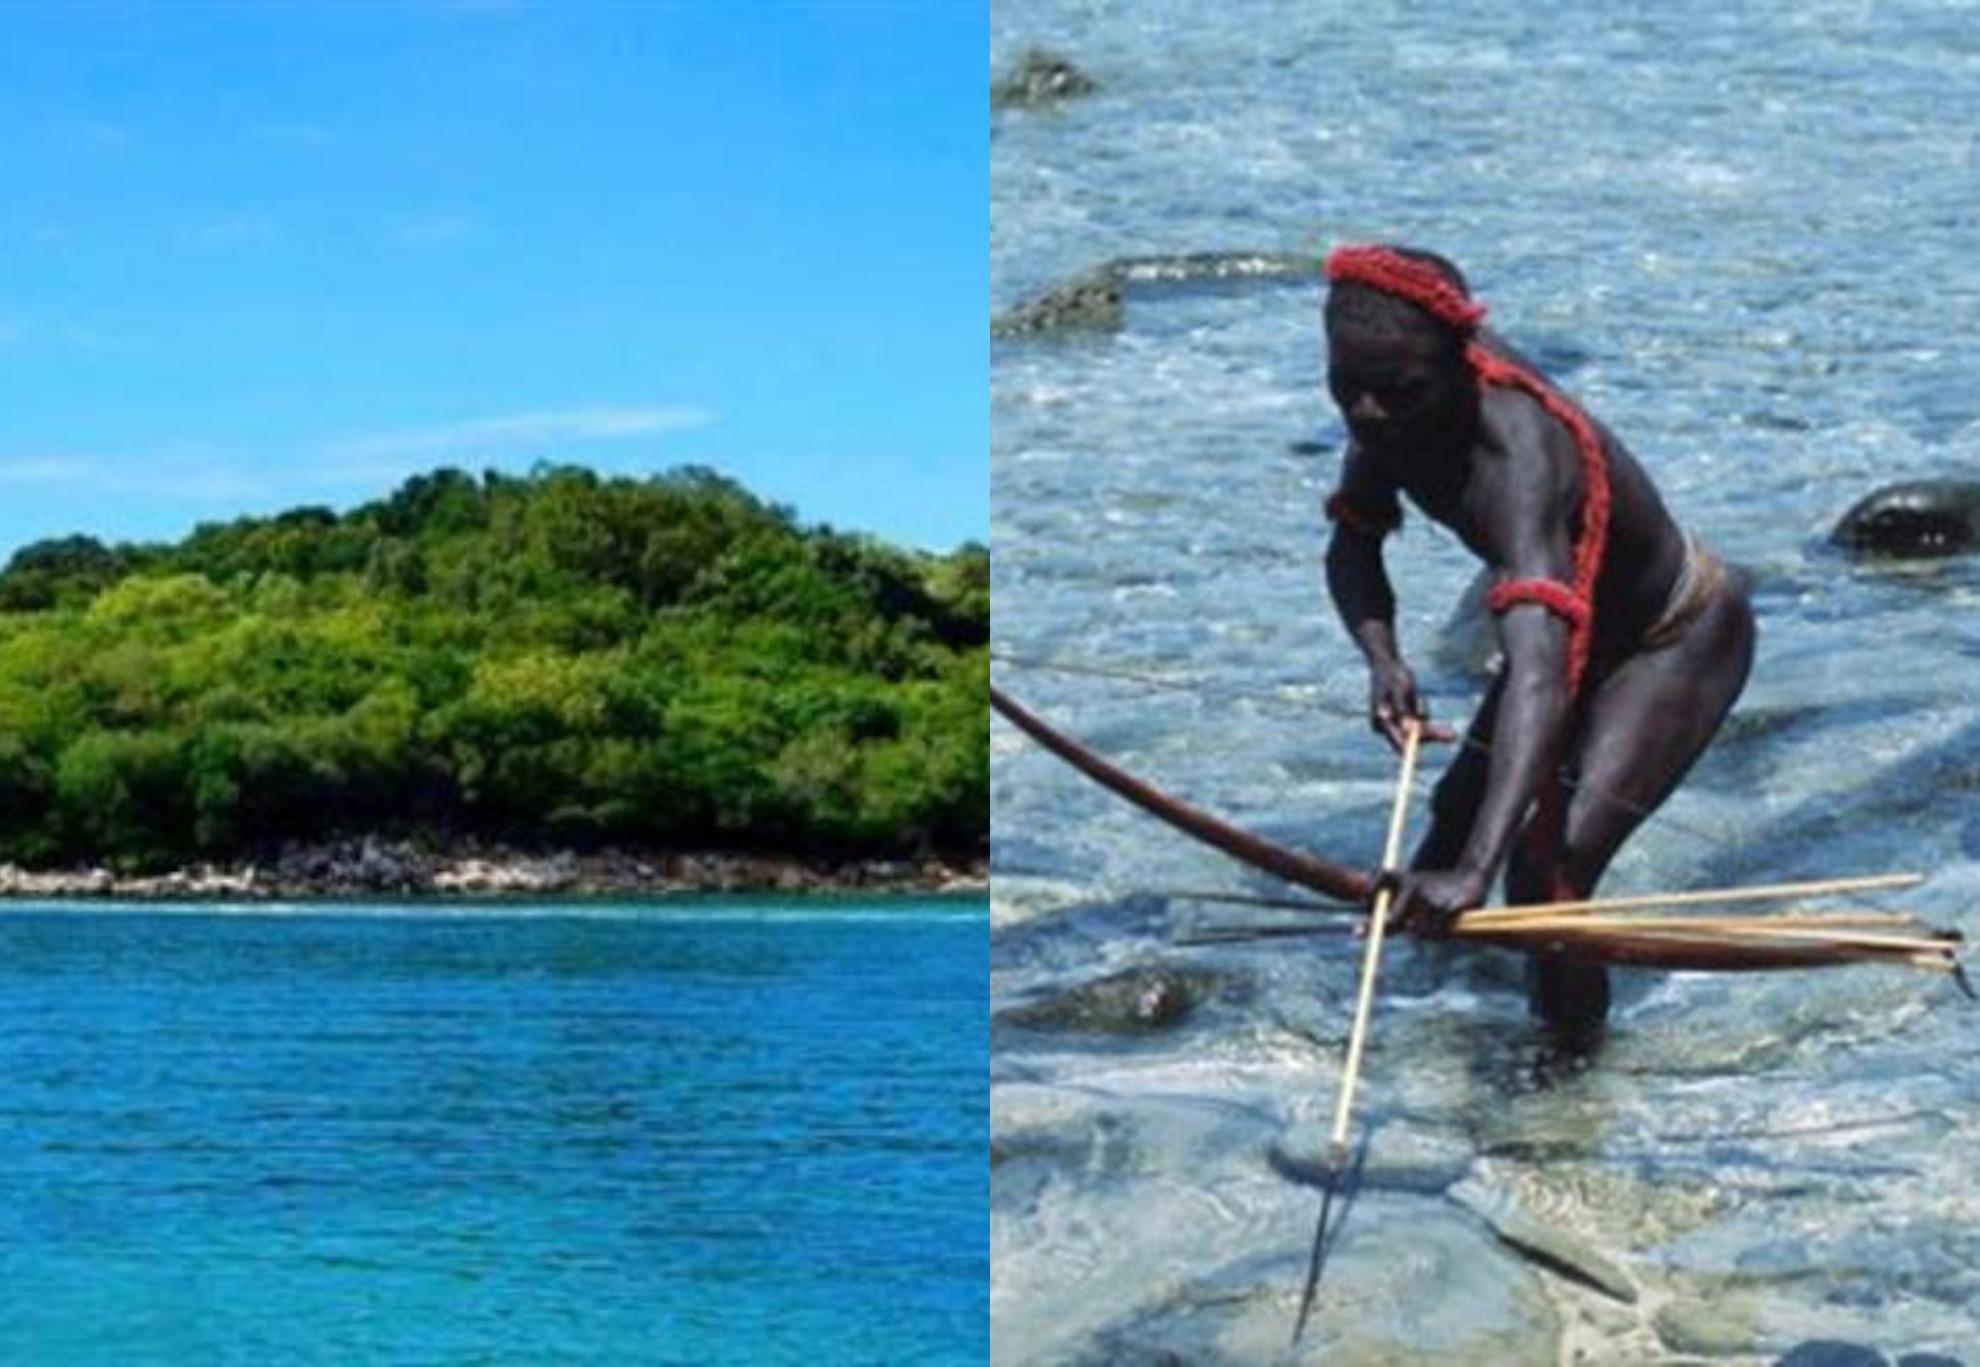 Βόρειο Σέντινελ το νησί του θανάτου: Ένας επίγειος παράδεισος ανέπαφος από τον πολιτισμό που κατοικείται από την πιο επικίνδυνη  πρωτόγονη φυλή κανίβαλων